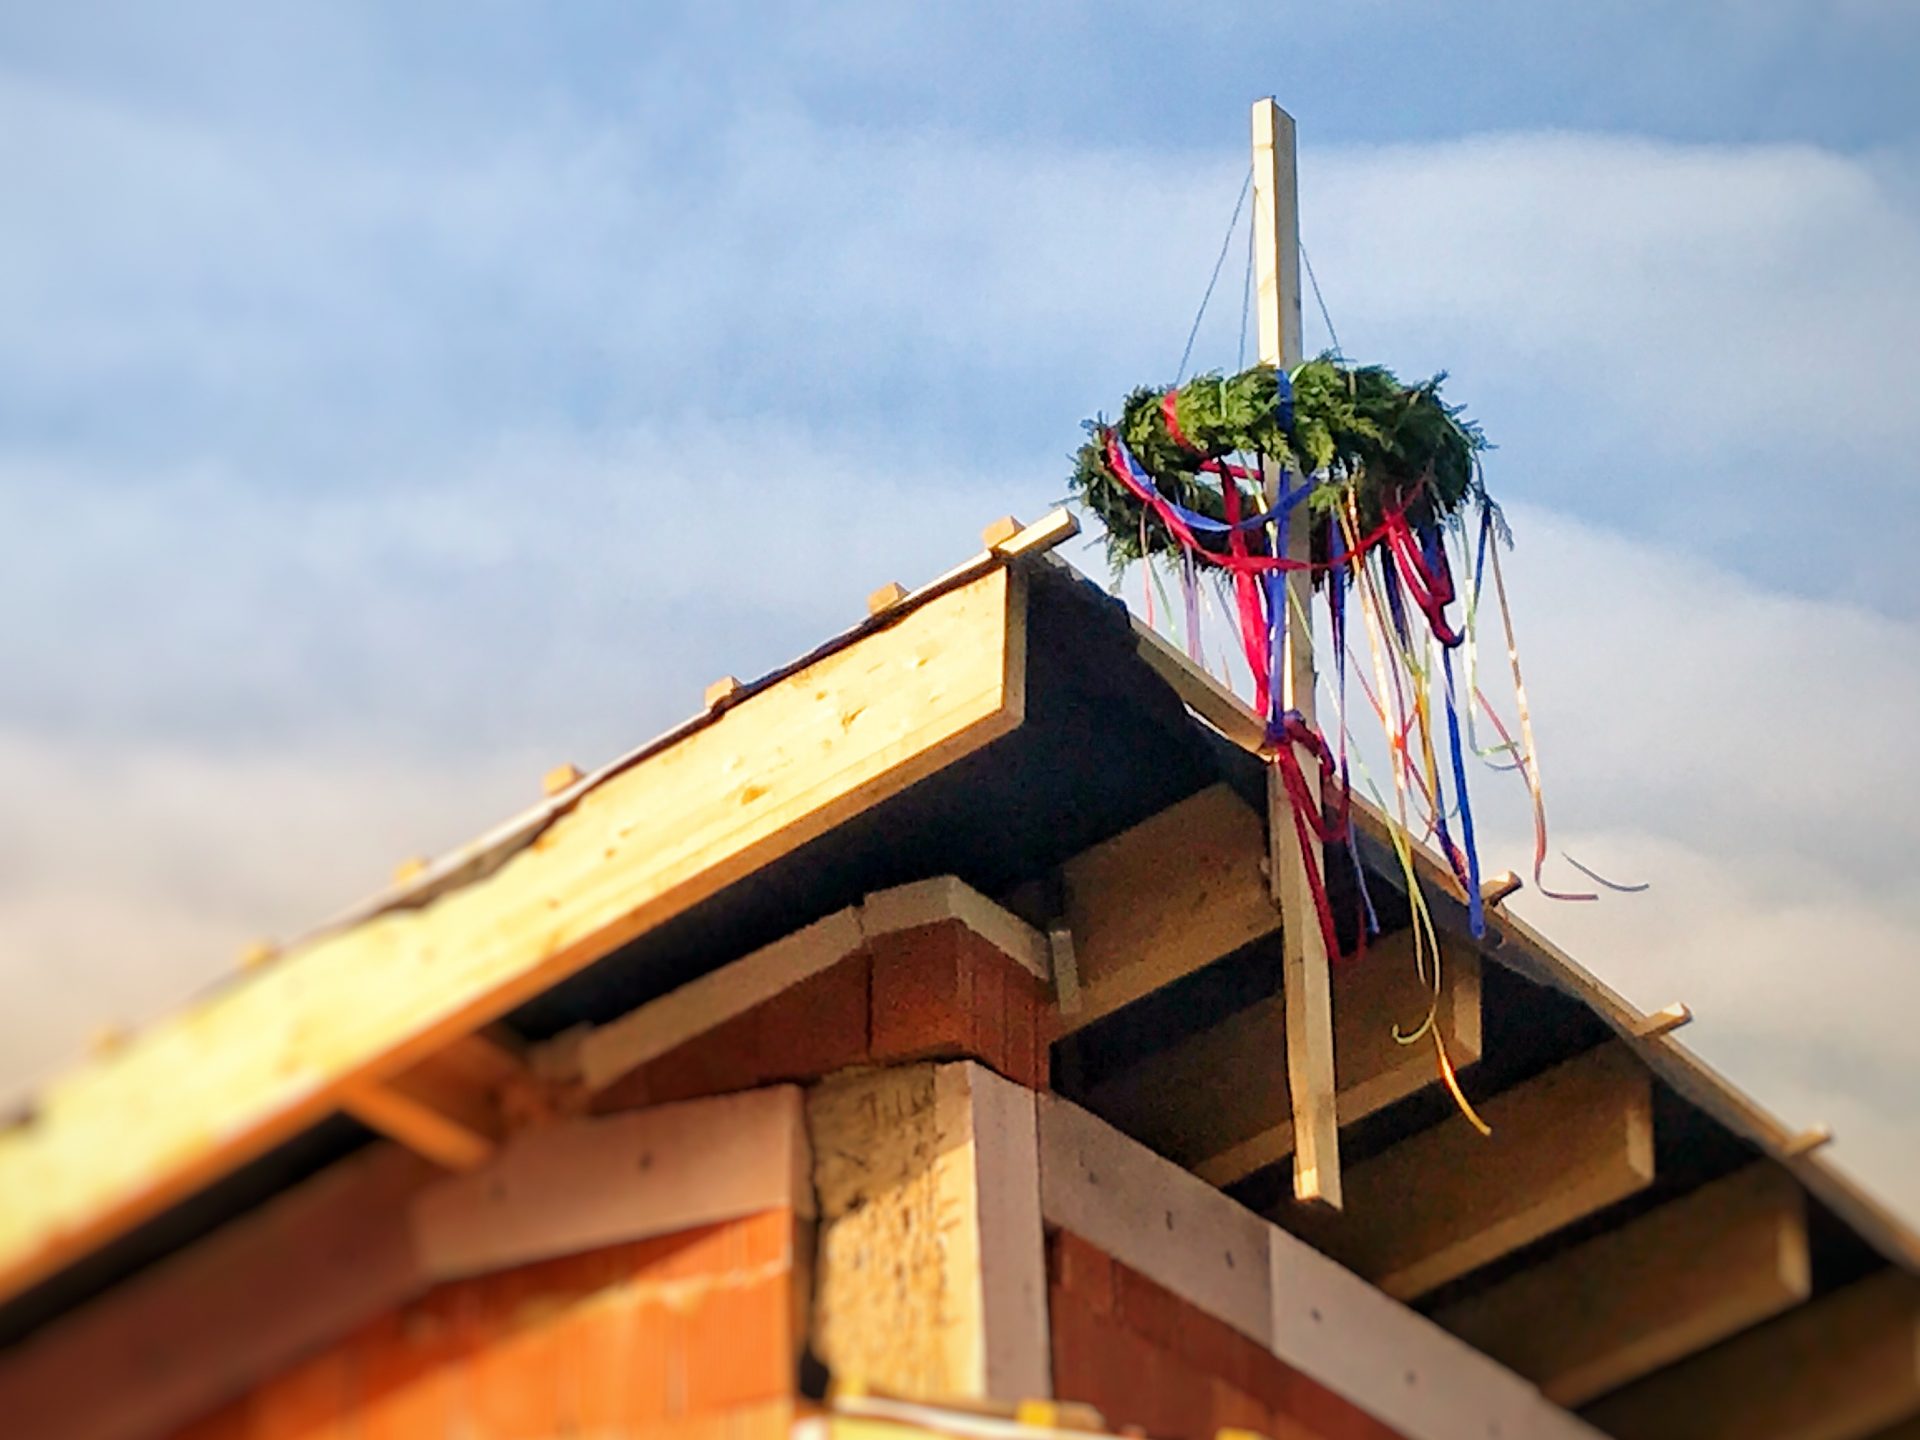 Bunter Richtkranz auf dem Dach des Dorfgemeinschaftshauses.